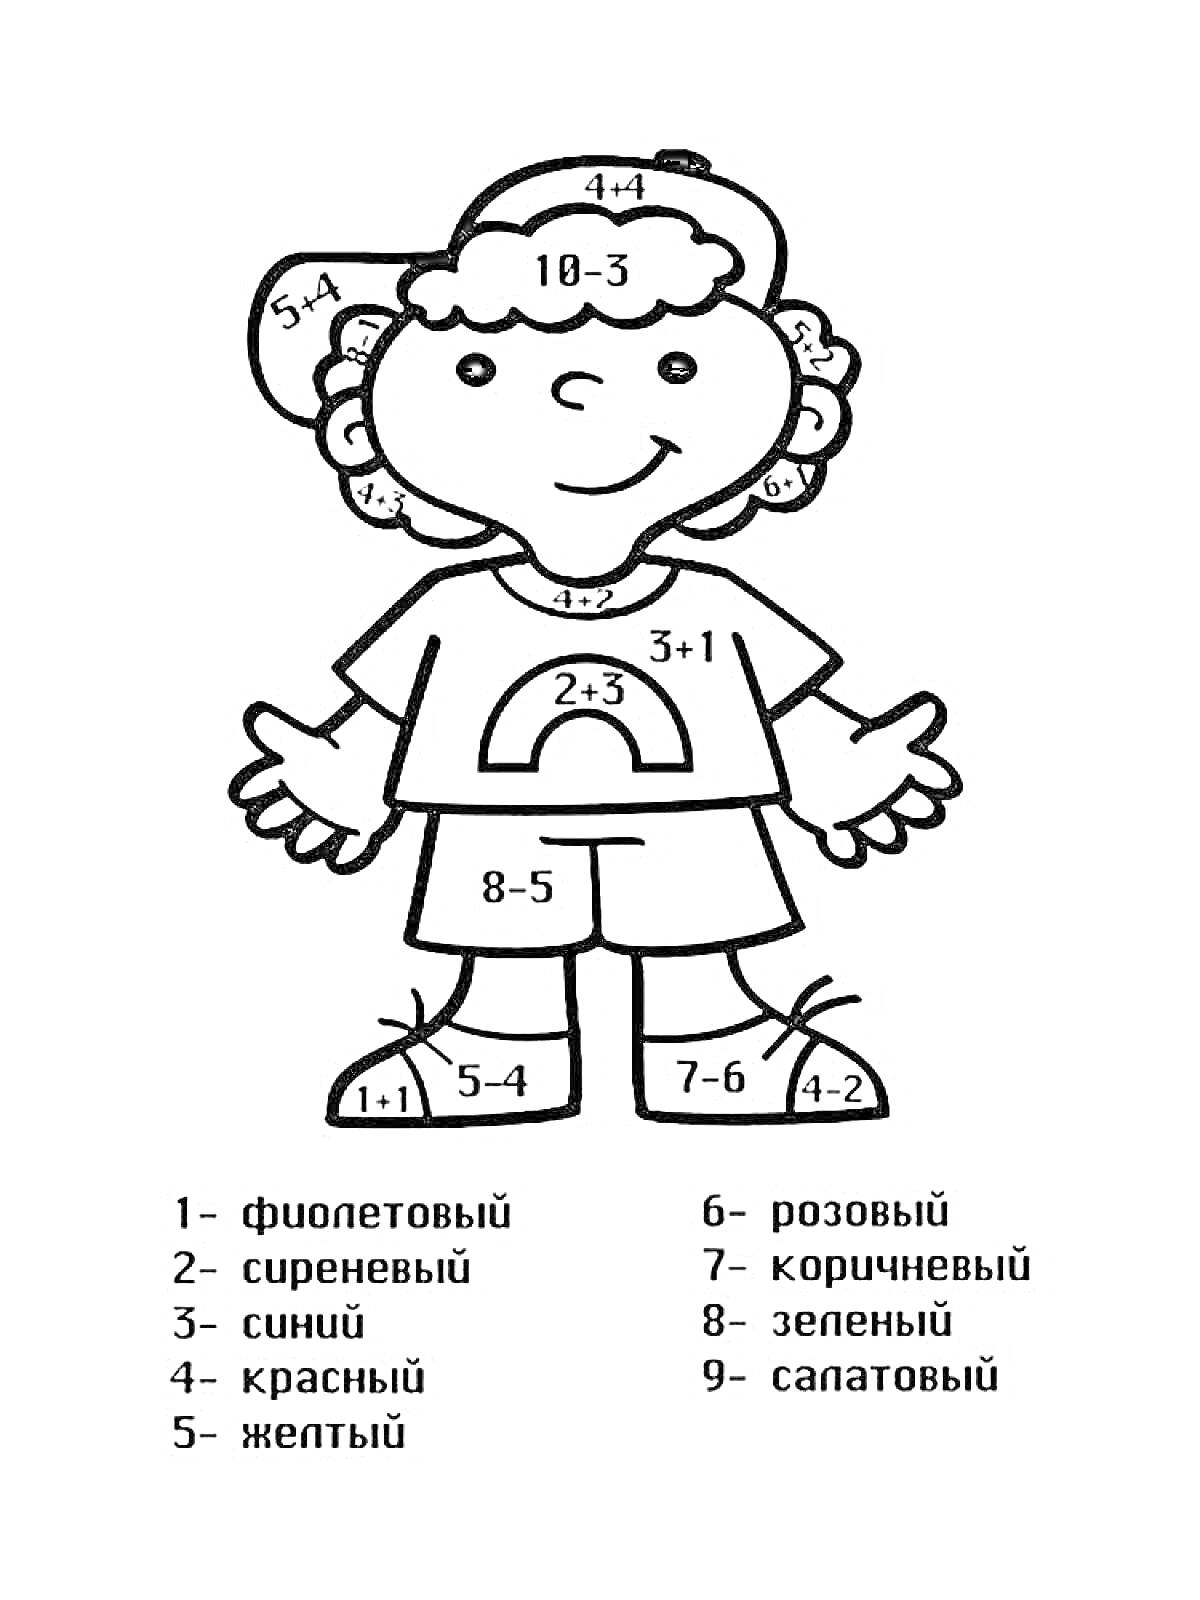 Раскраска Раскраска с примерами в пределах, на изображении ребёнок в кепке, с руками в стороны, с номерами в соответствие с примерами.